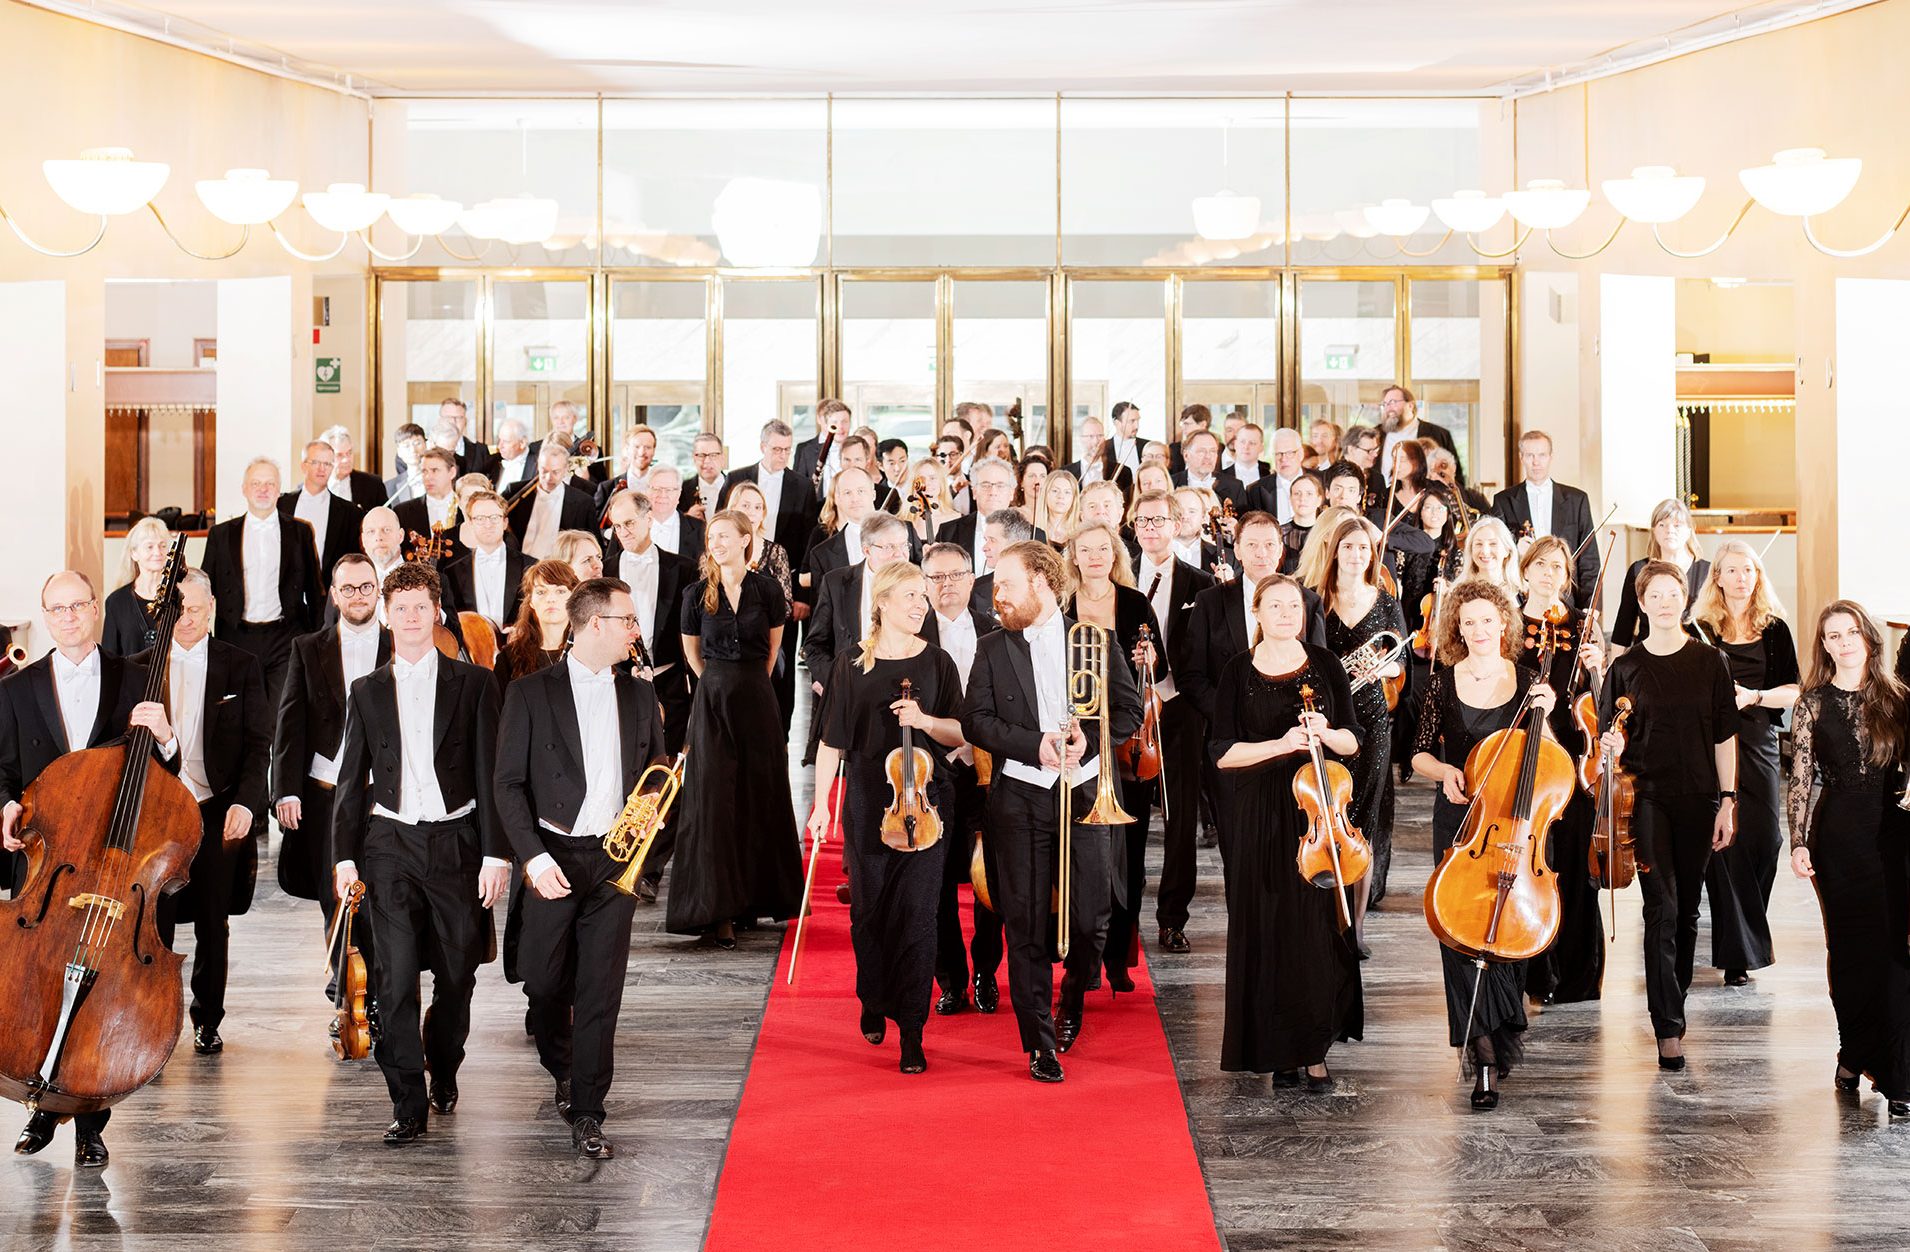 Göteborgs Symfonikers alla musiker går mot kameran på en röd matta i garderobshallen. De är glada och pratar med varandra.